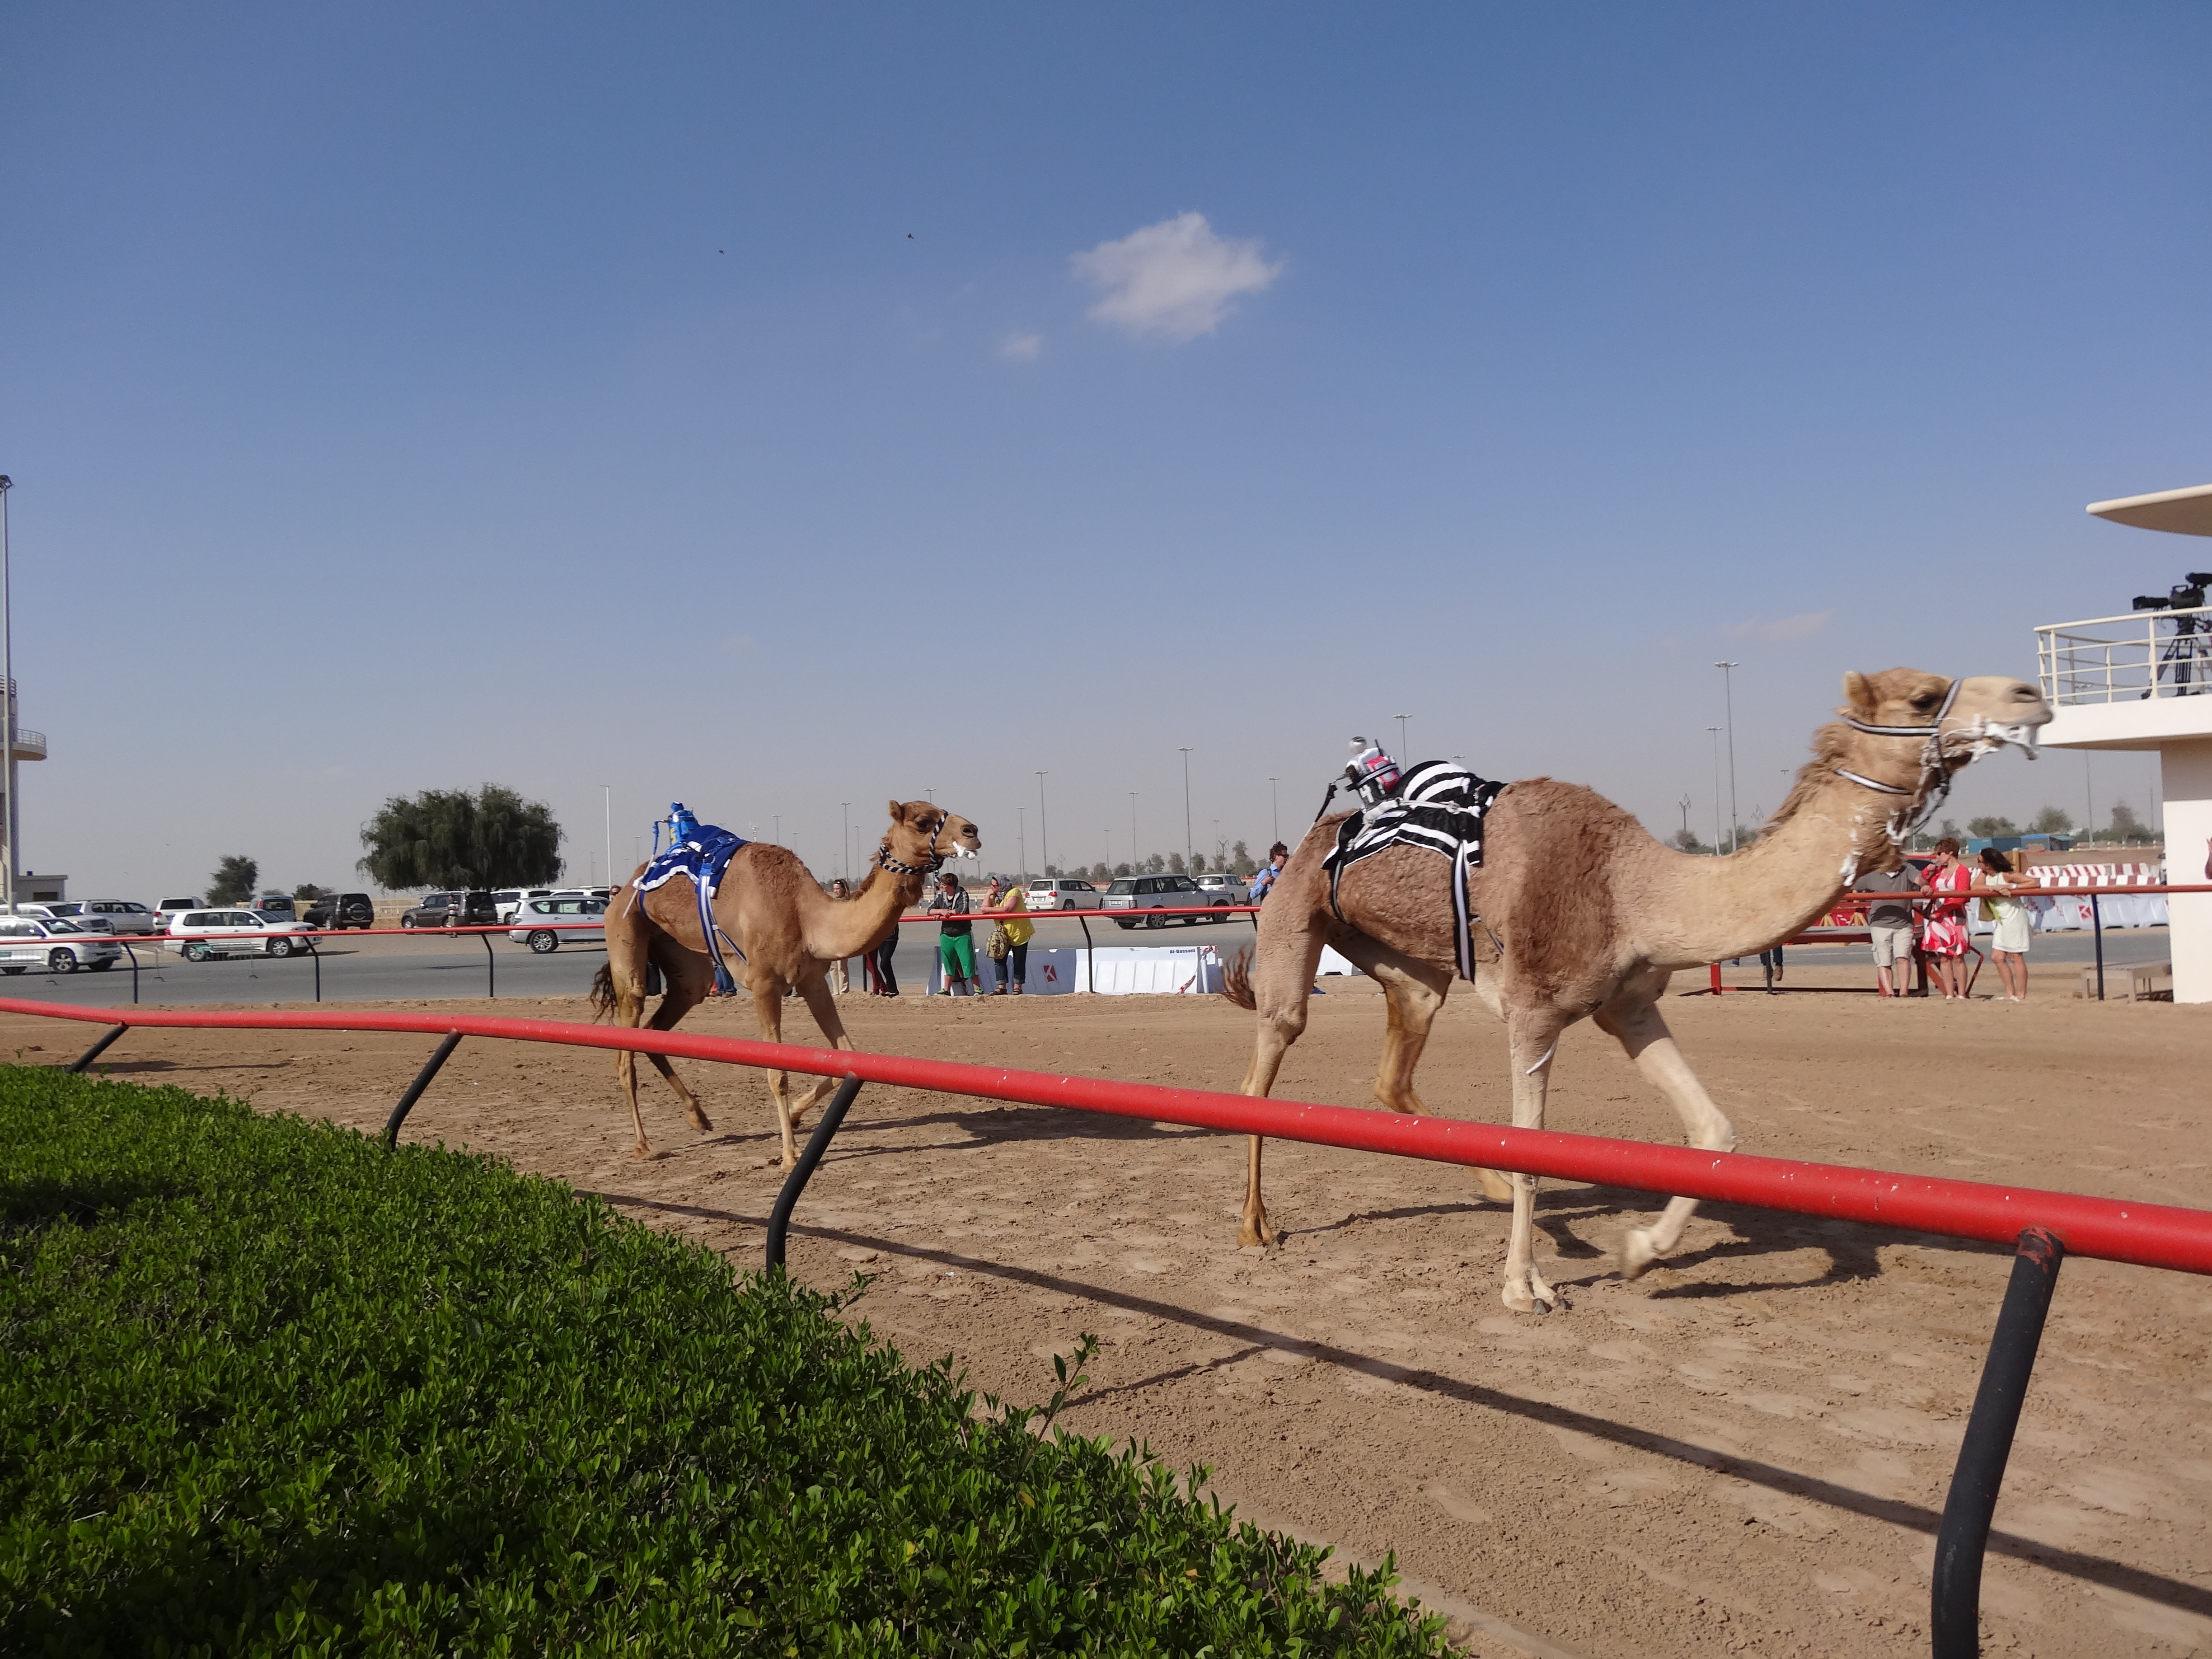 camels running